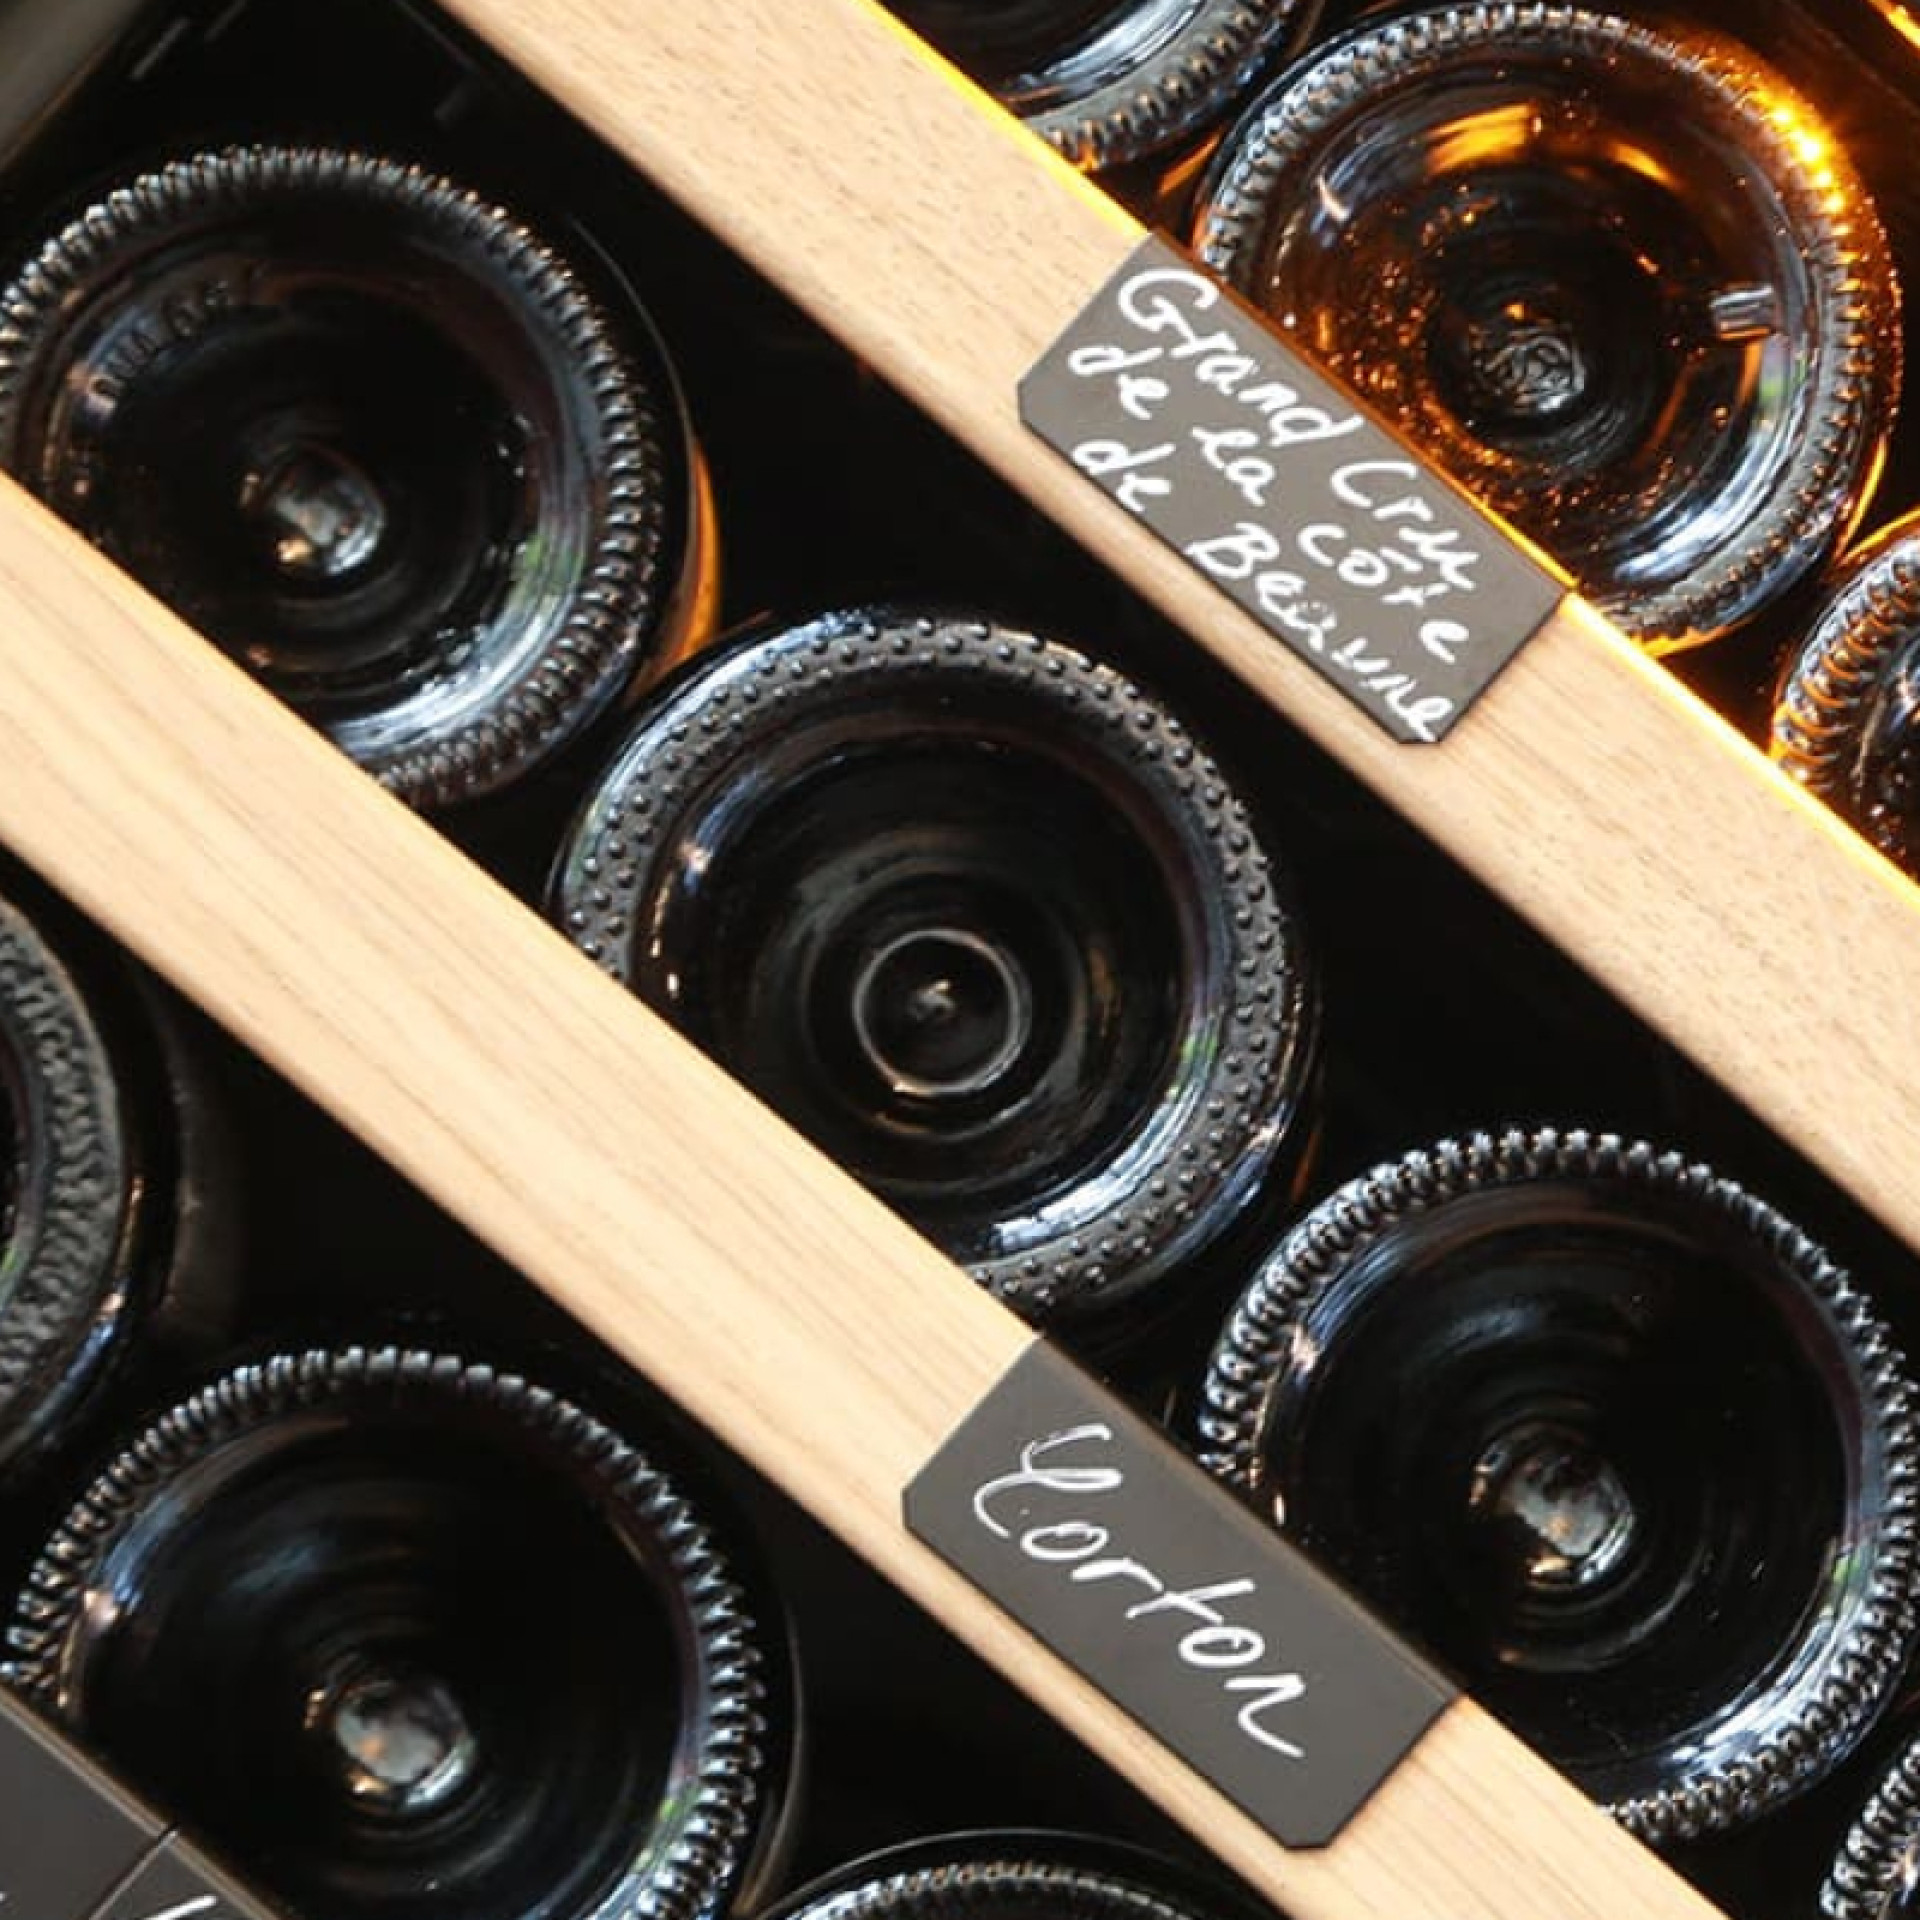 Rangement armoire à vin - étagères en métal avec supports bouteilles individuels, façade en bois de chêne couleur naturelle.